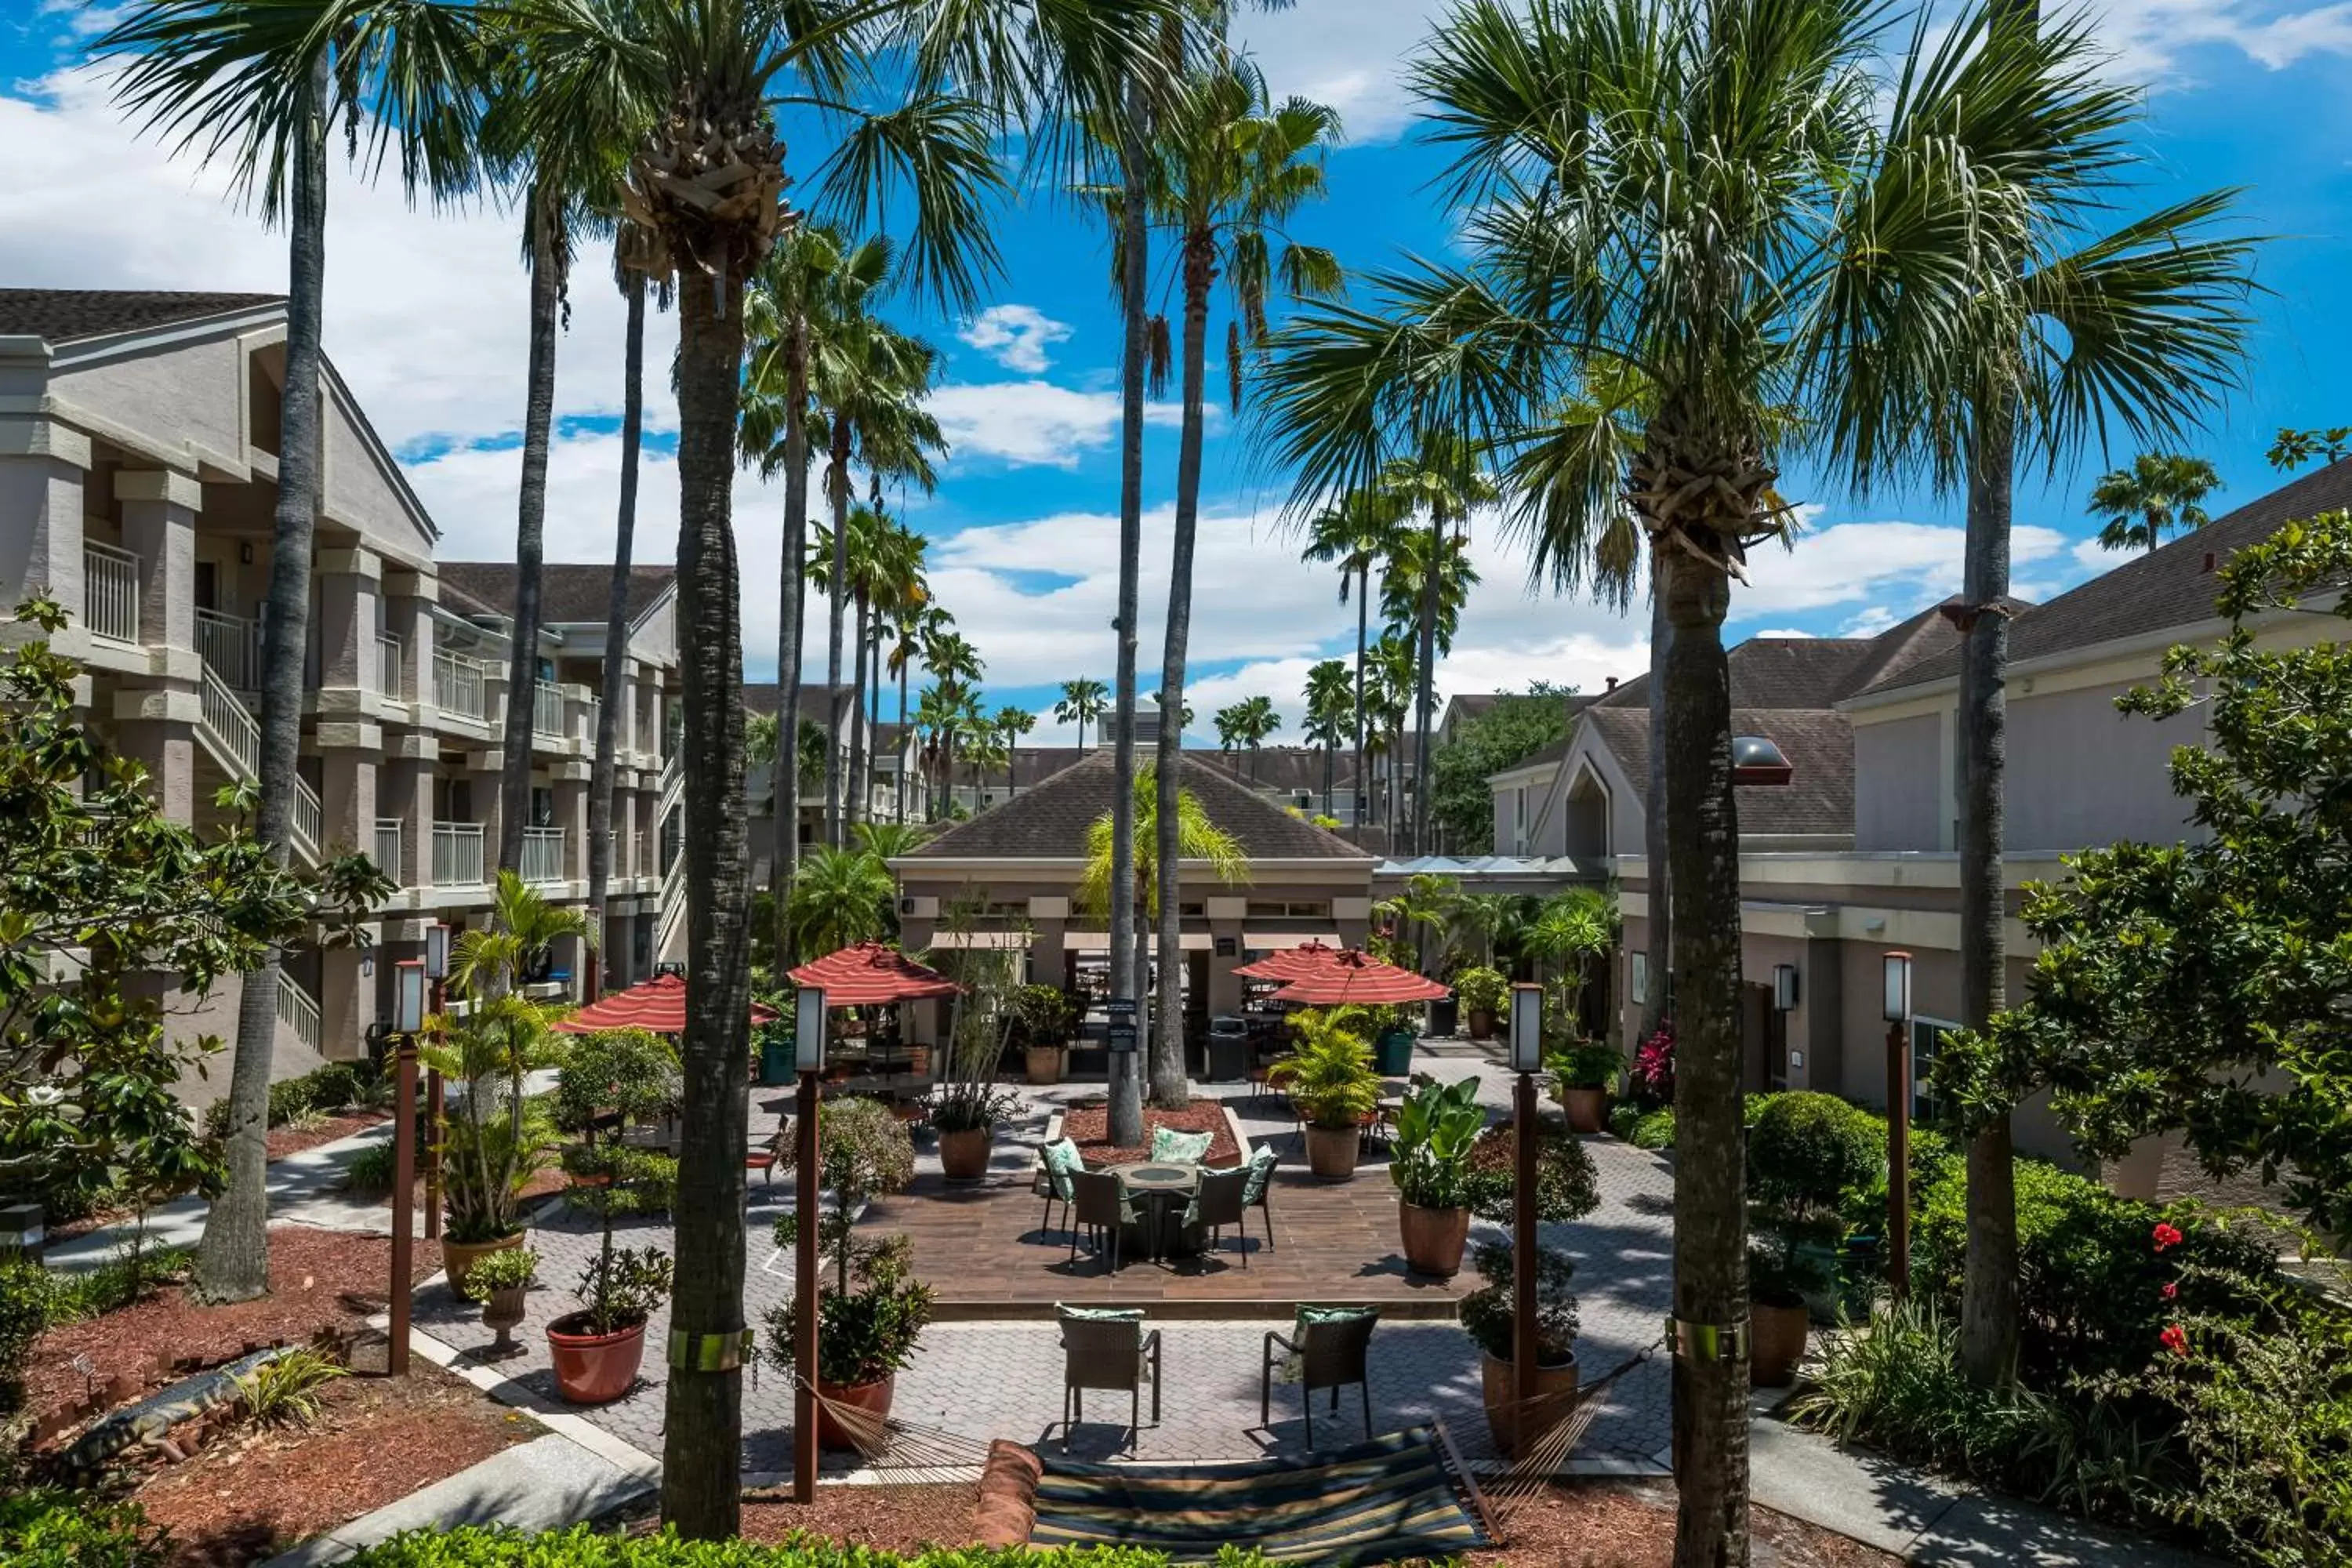 Property building, Restaurant/Places to Eat in Sonesta ES Suites Orlando - Lake Buena Vista